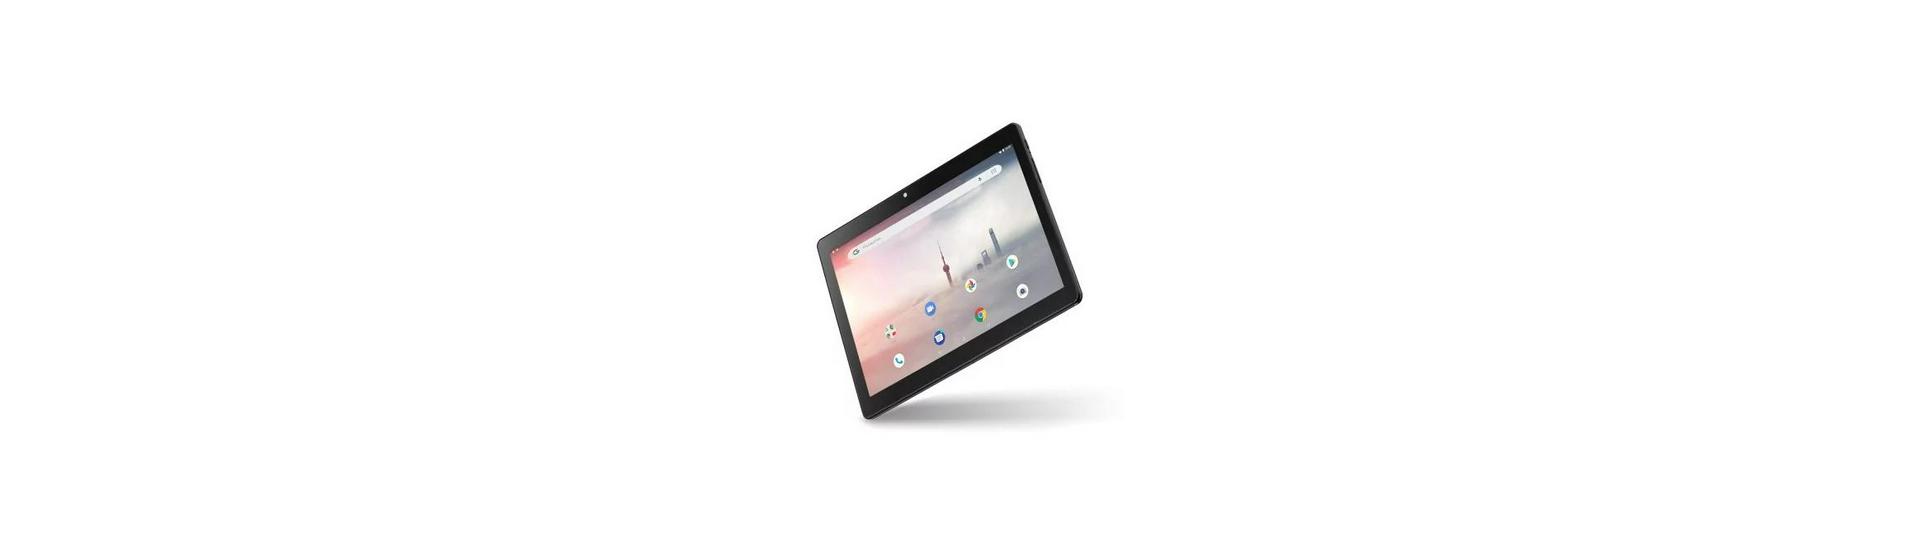 Promoção: Tablet Multilaser M10A NB331 32GB 3G 10" Android 5 MP